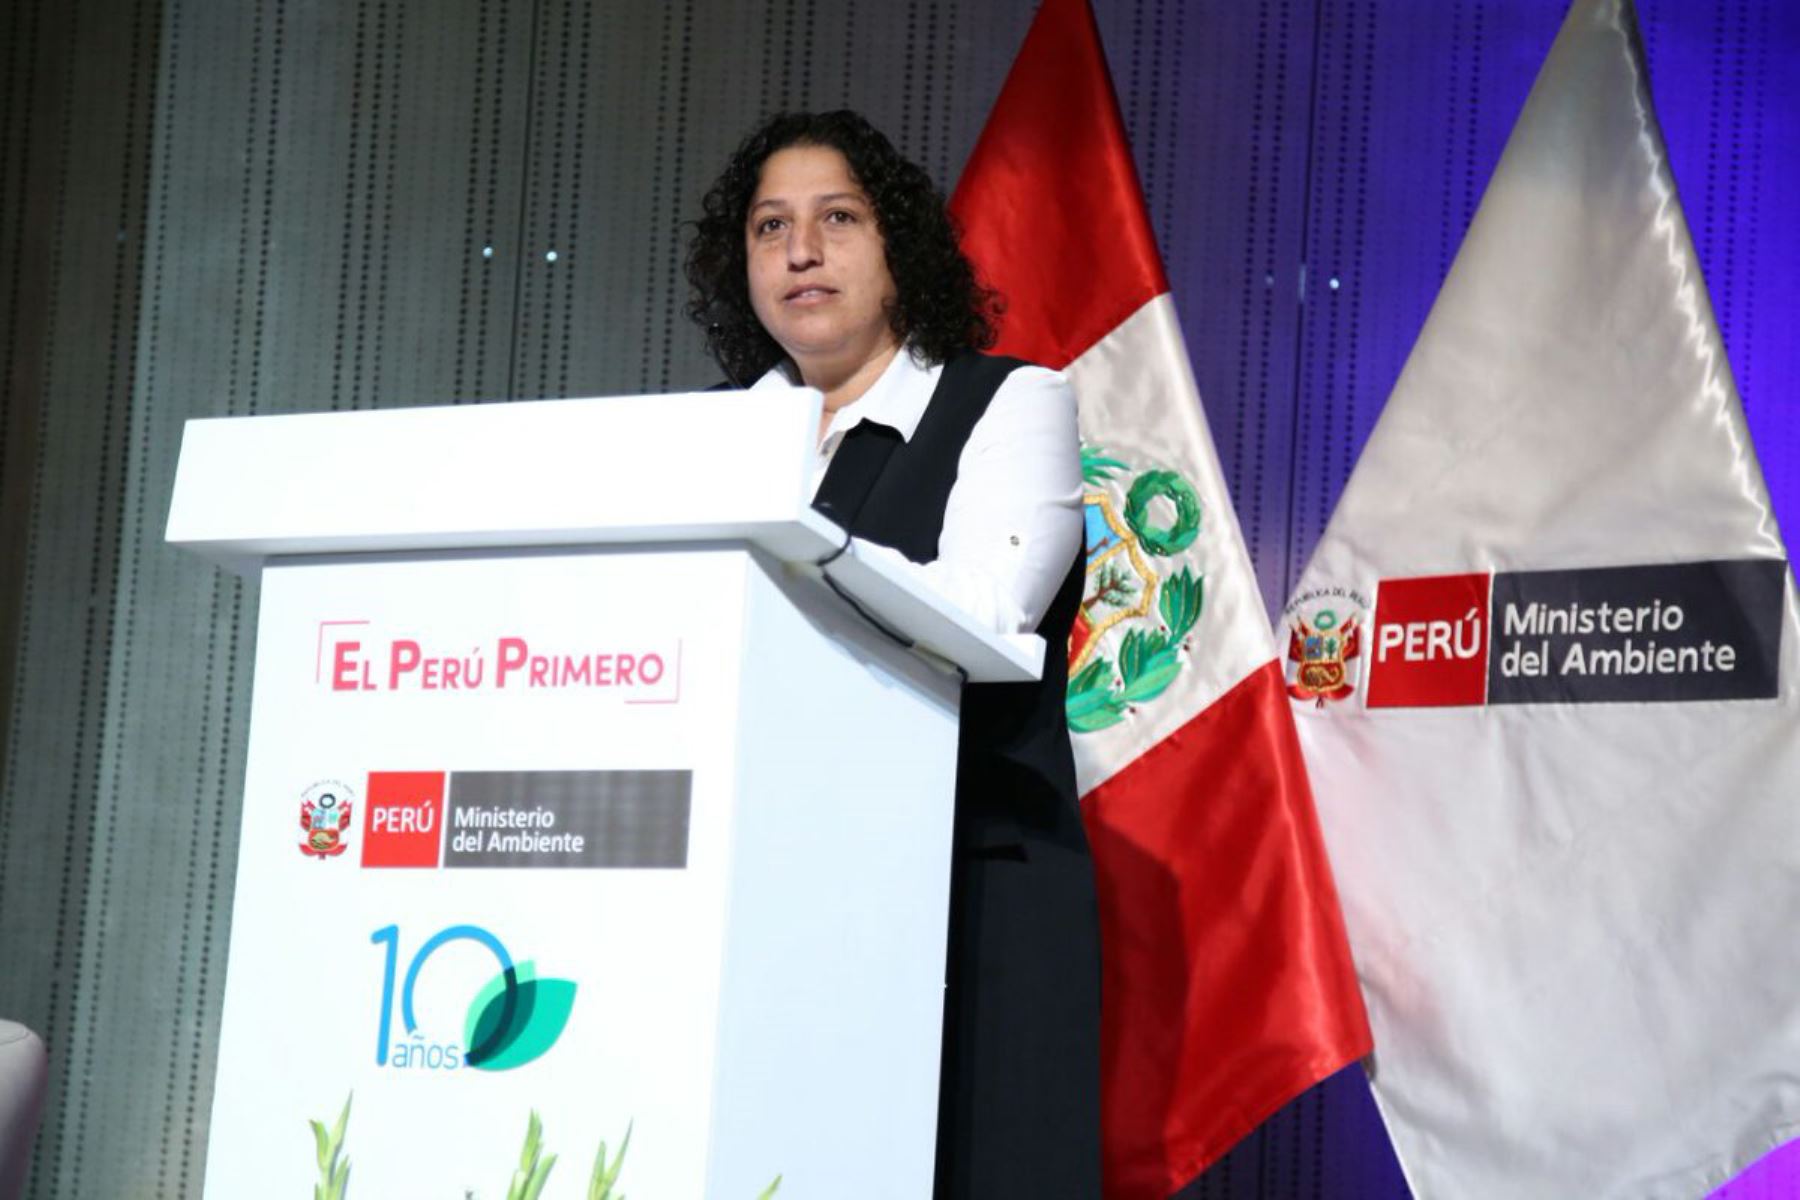 Uno de los retos fundamentales del Perú en la actualidad para lograr un crecimiento sostenible es que el componente ambiental esté presente en cada decisión de política pública y en el ámbito privado, sea en la industria y/o del pequeño productor, sostuvo hoy la ministra del Ambiente, Fabiola Muñoz